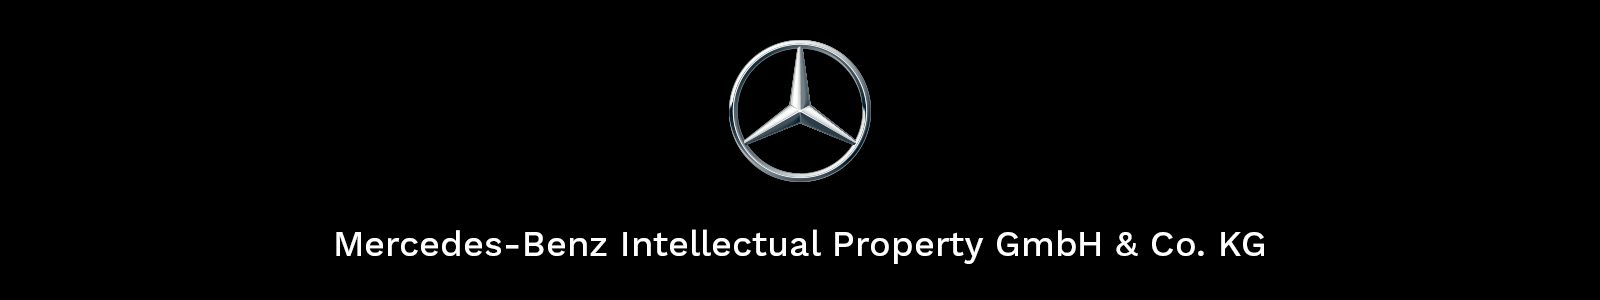 Mercedes-Benz Intellectual Property GmbH & Co. KG.